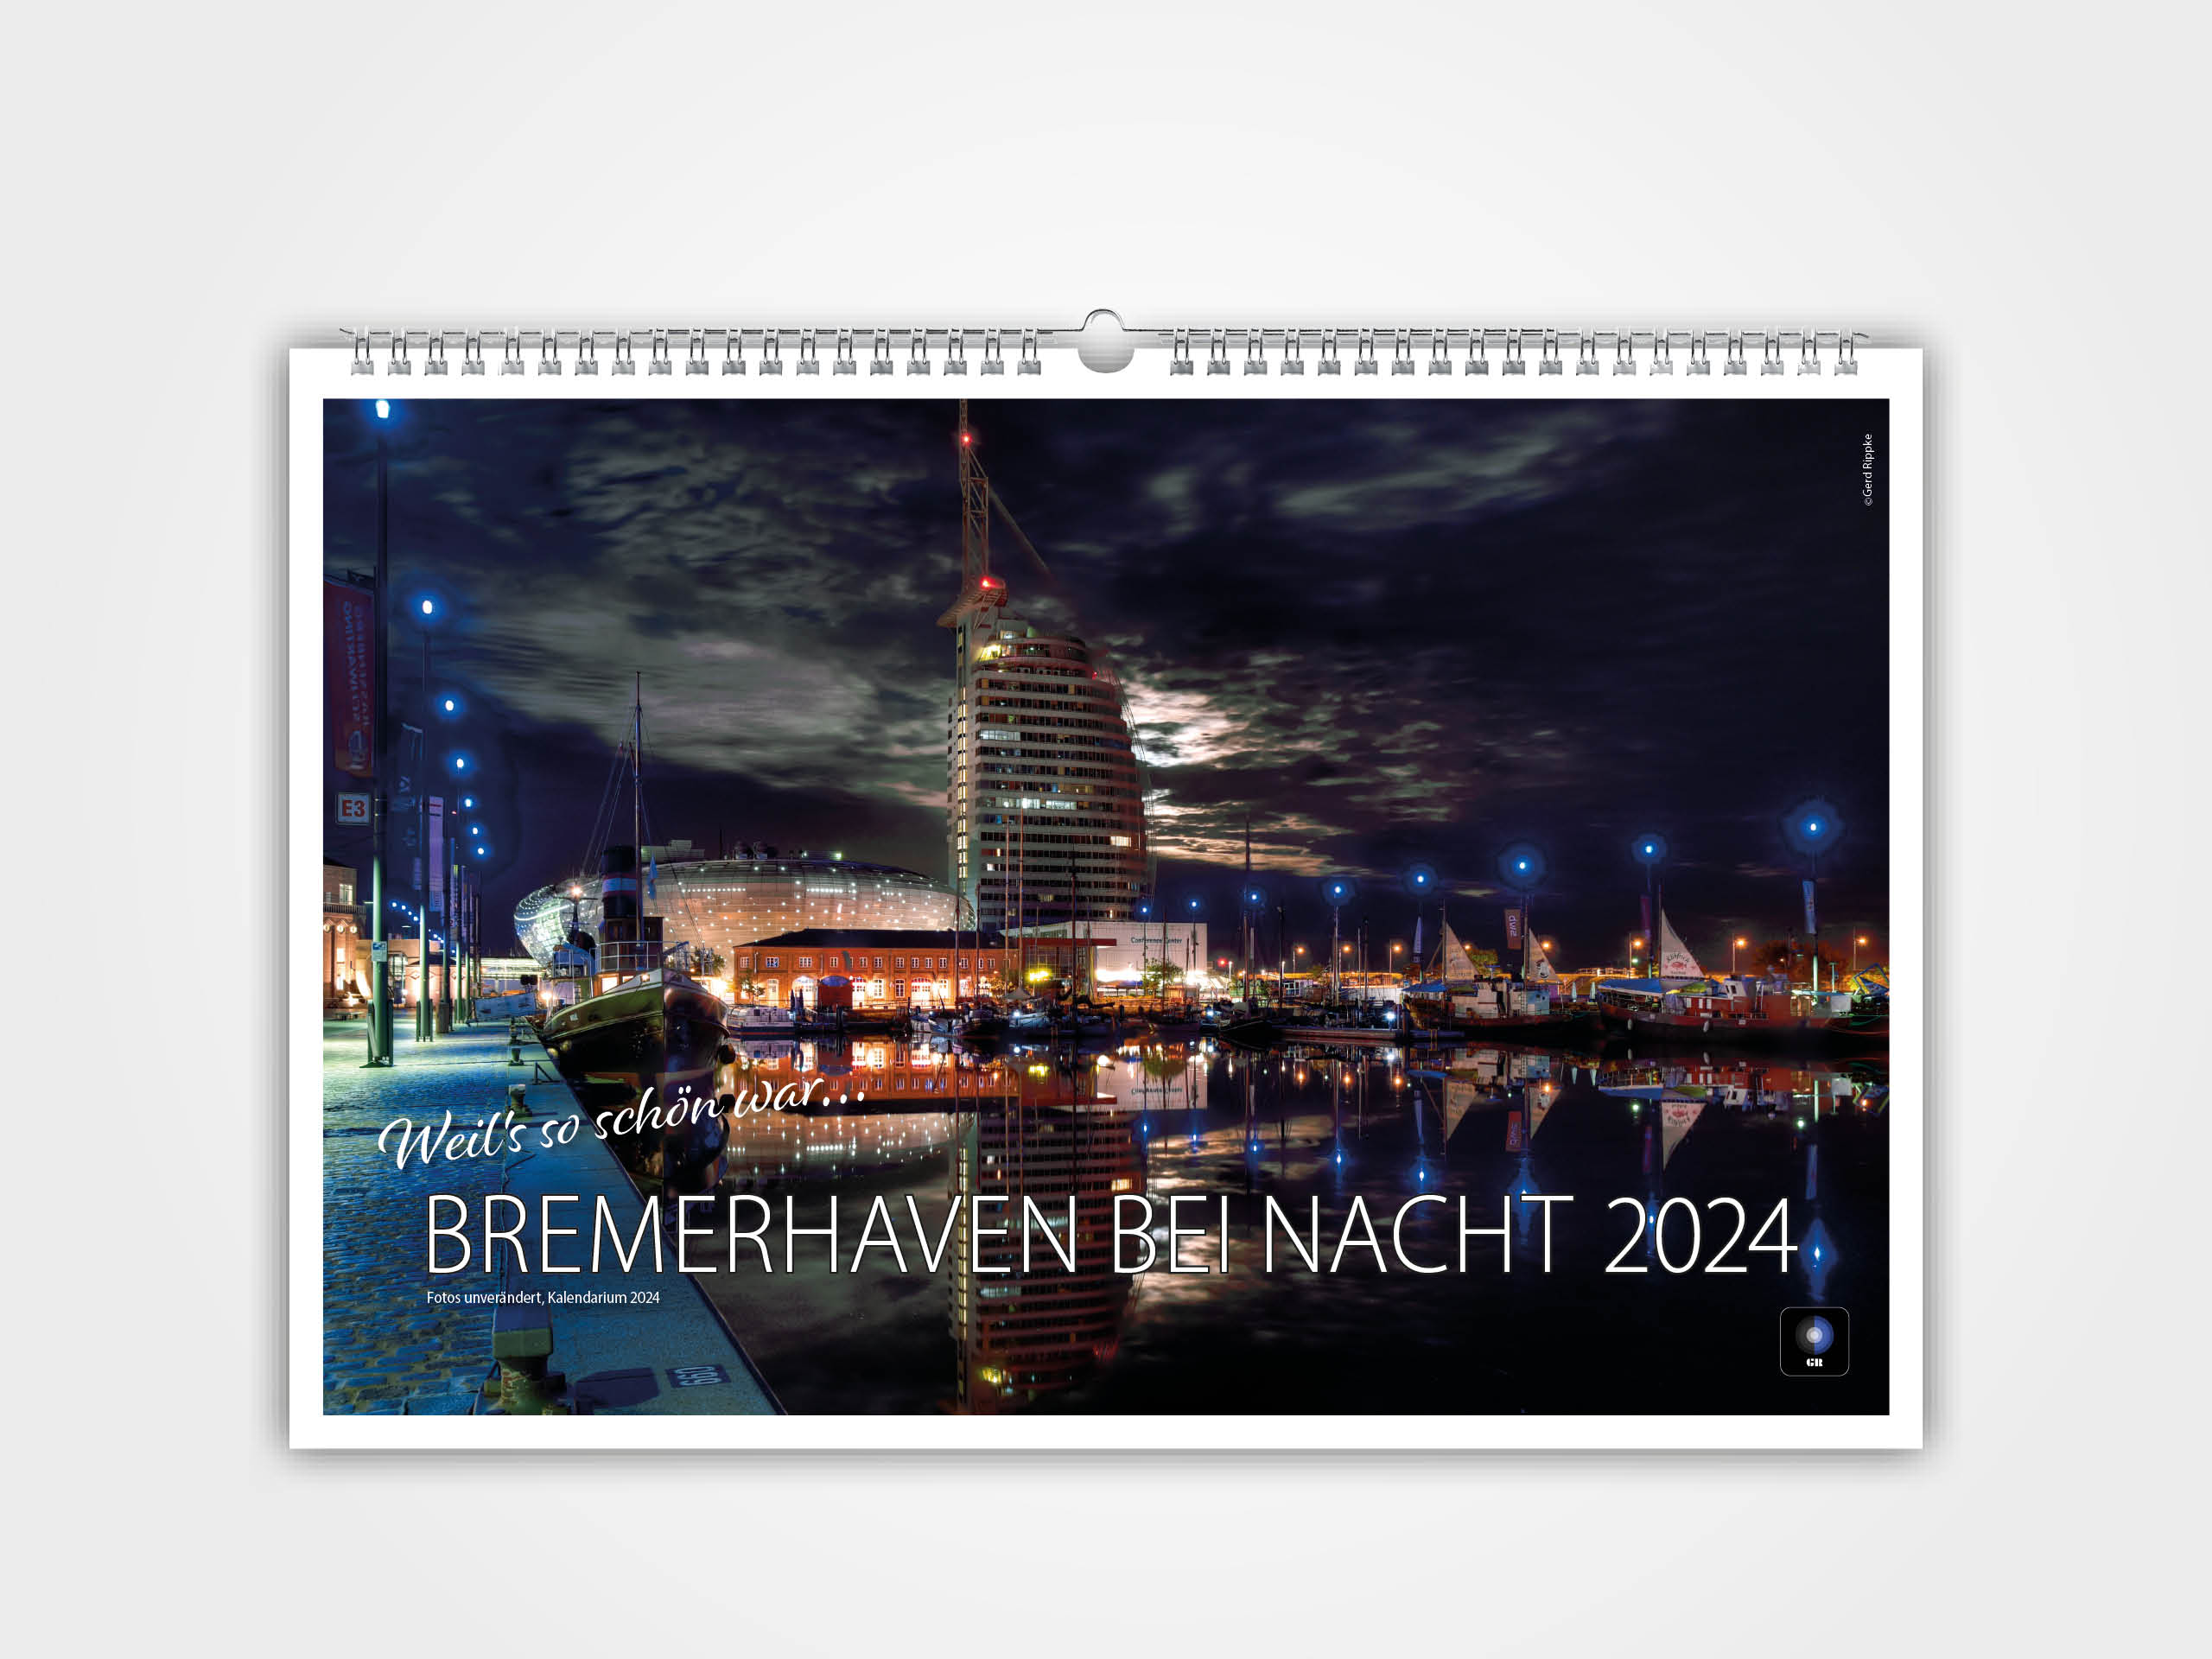 Weil's so schön war - Bremerhaven bei Nacht 2024